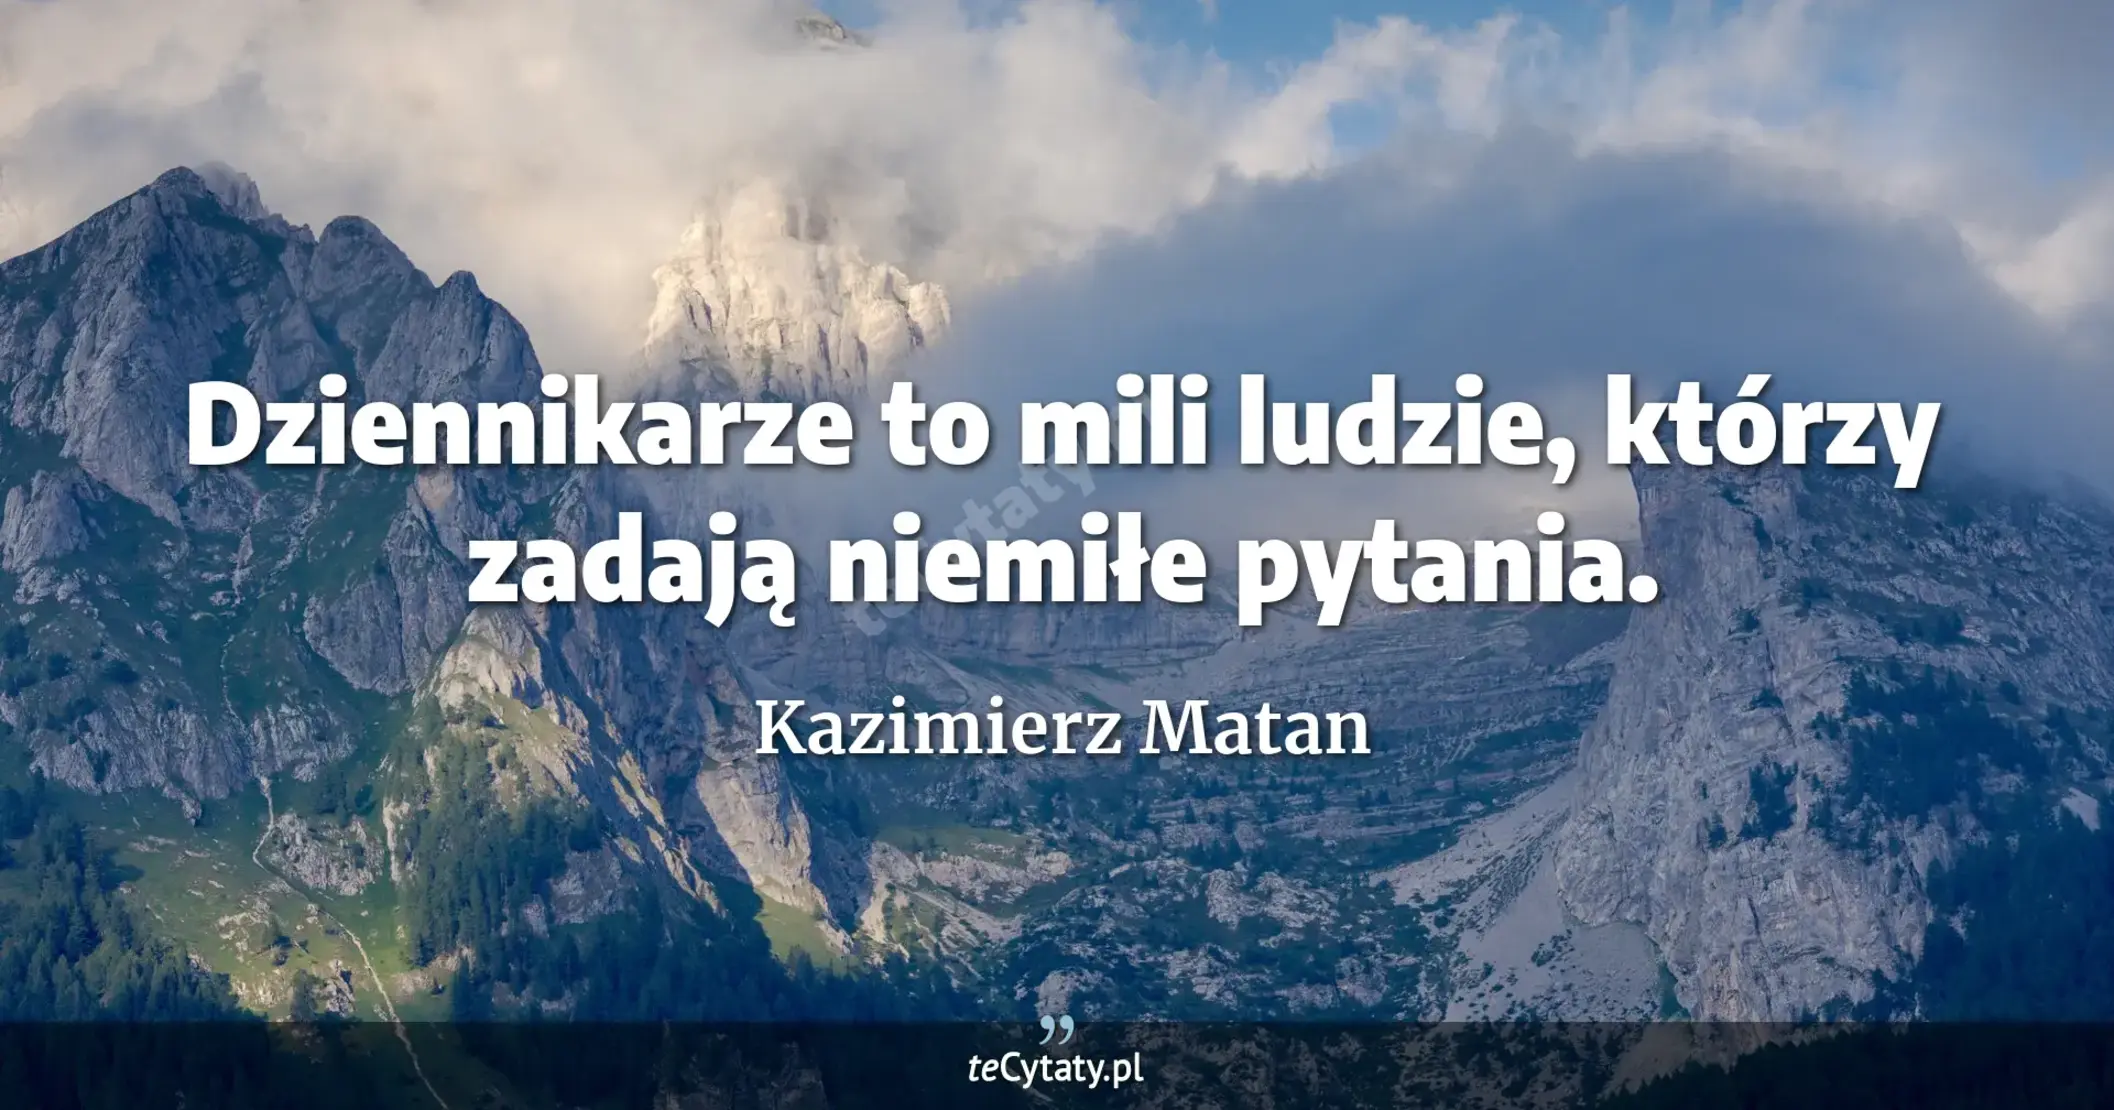 Dziennikarze to mili ludzie, którzy zadają niemiłe pytania. - Kazimierz Matan